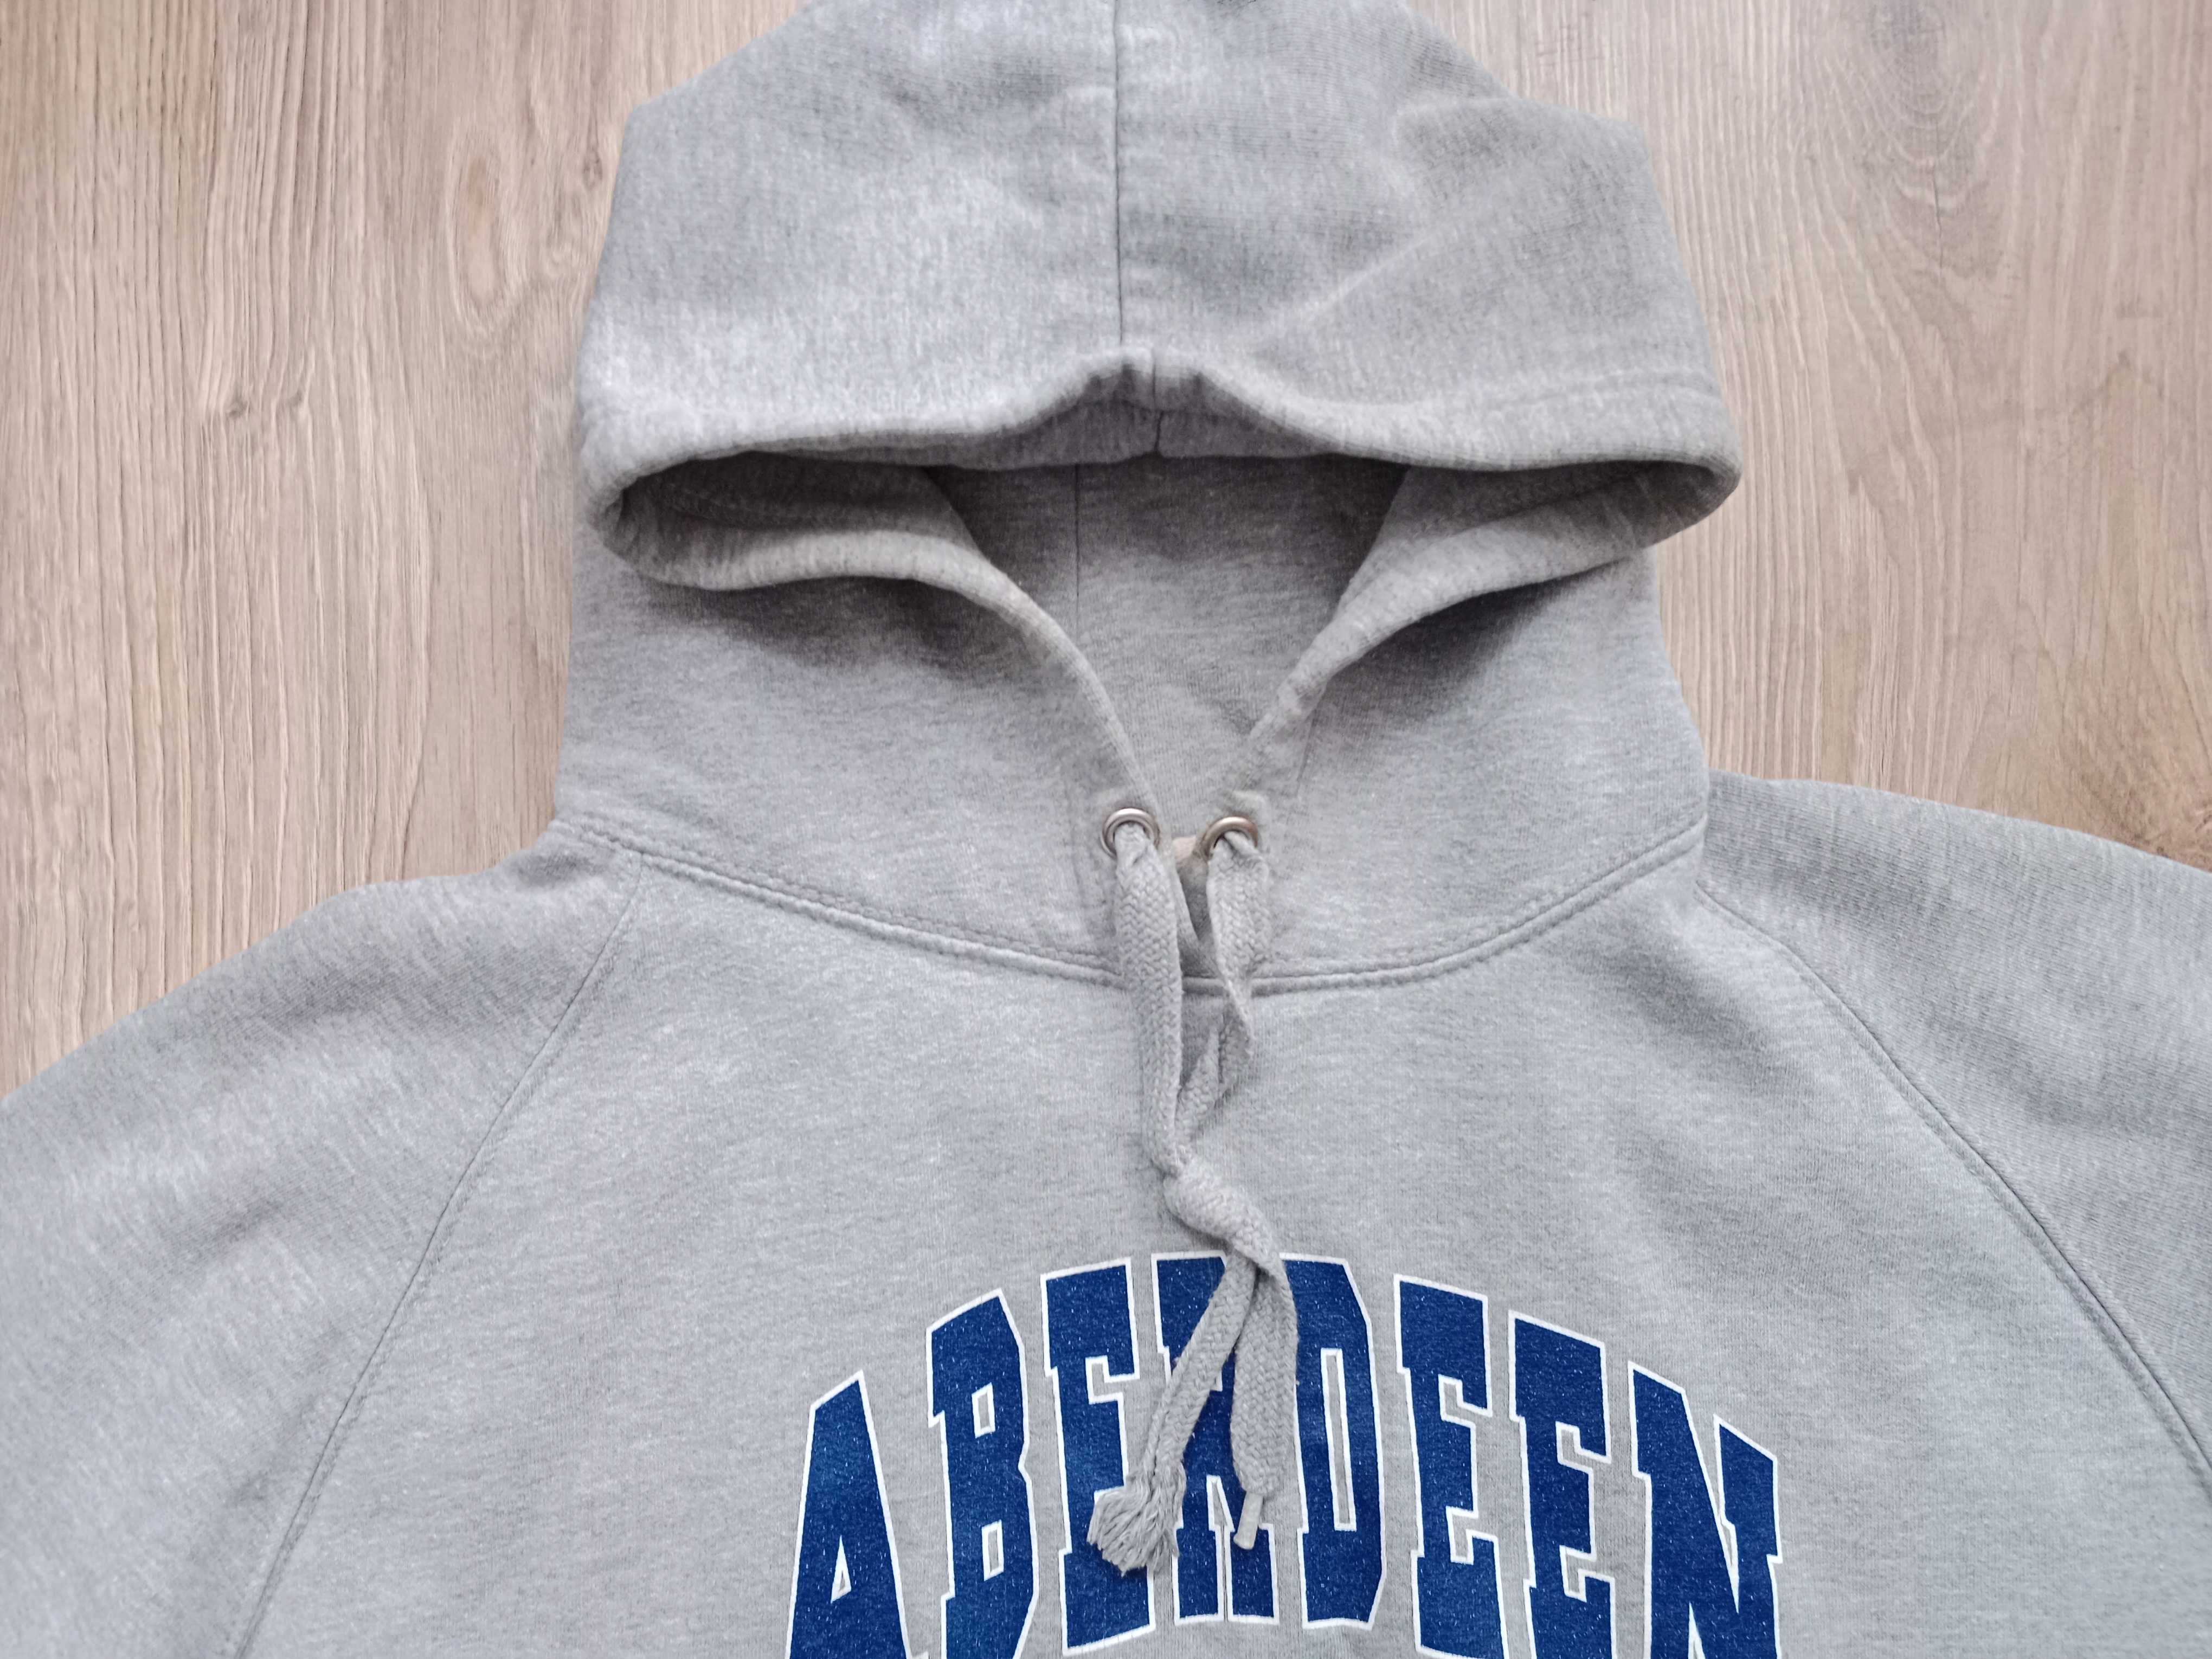 Bluza Aberdeen University rozm L/XL